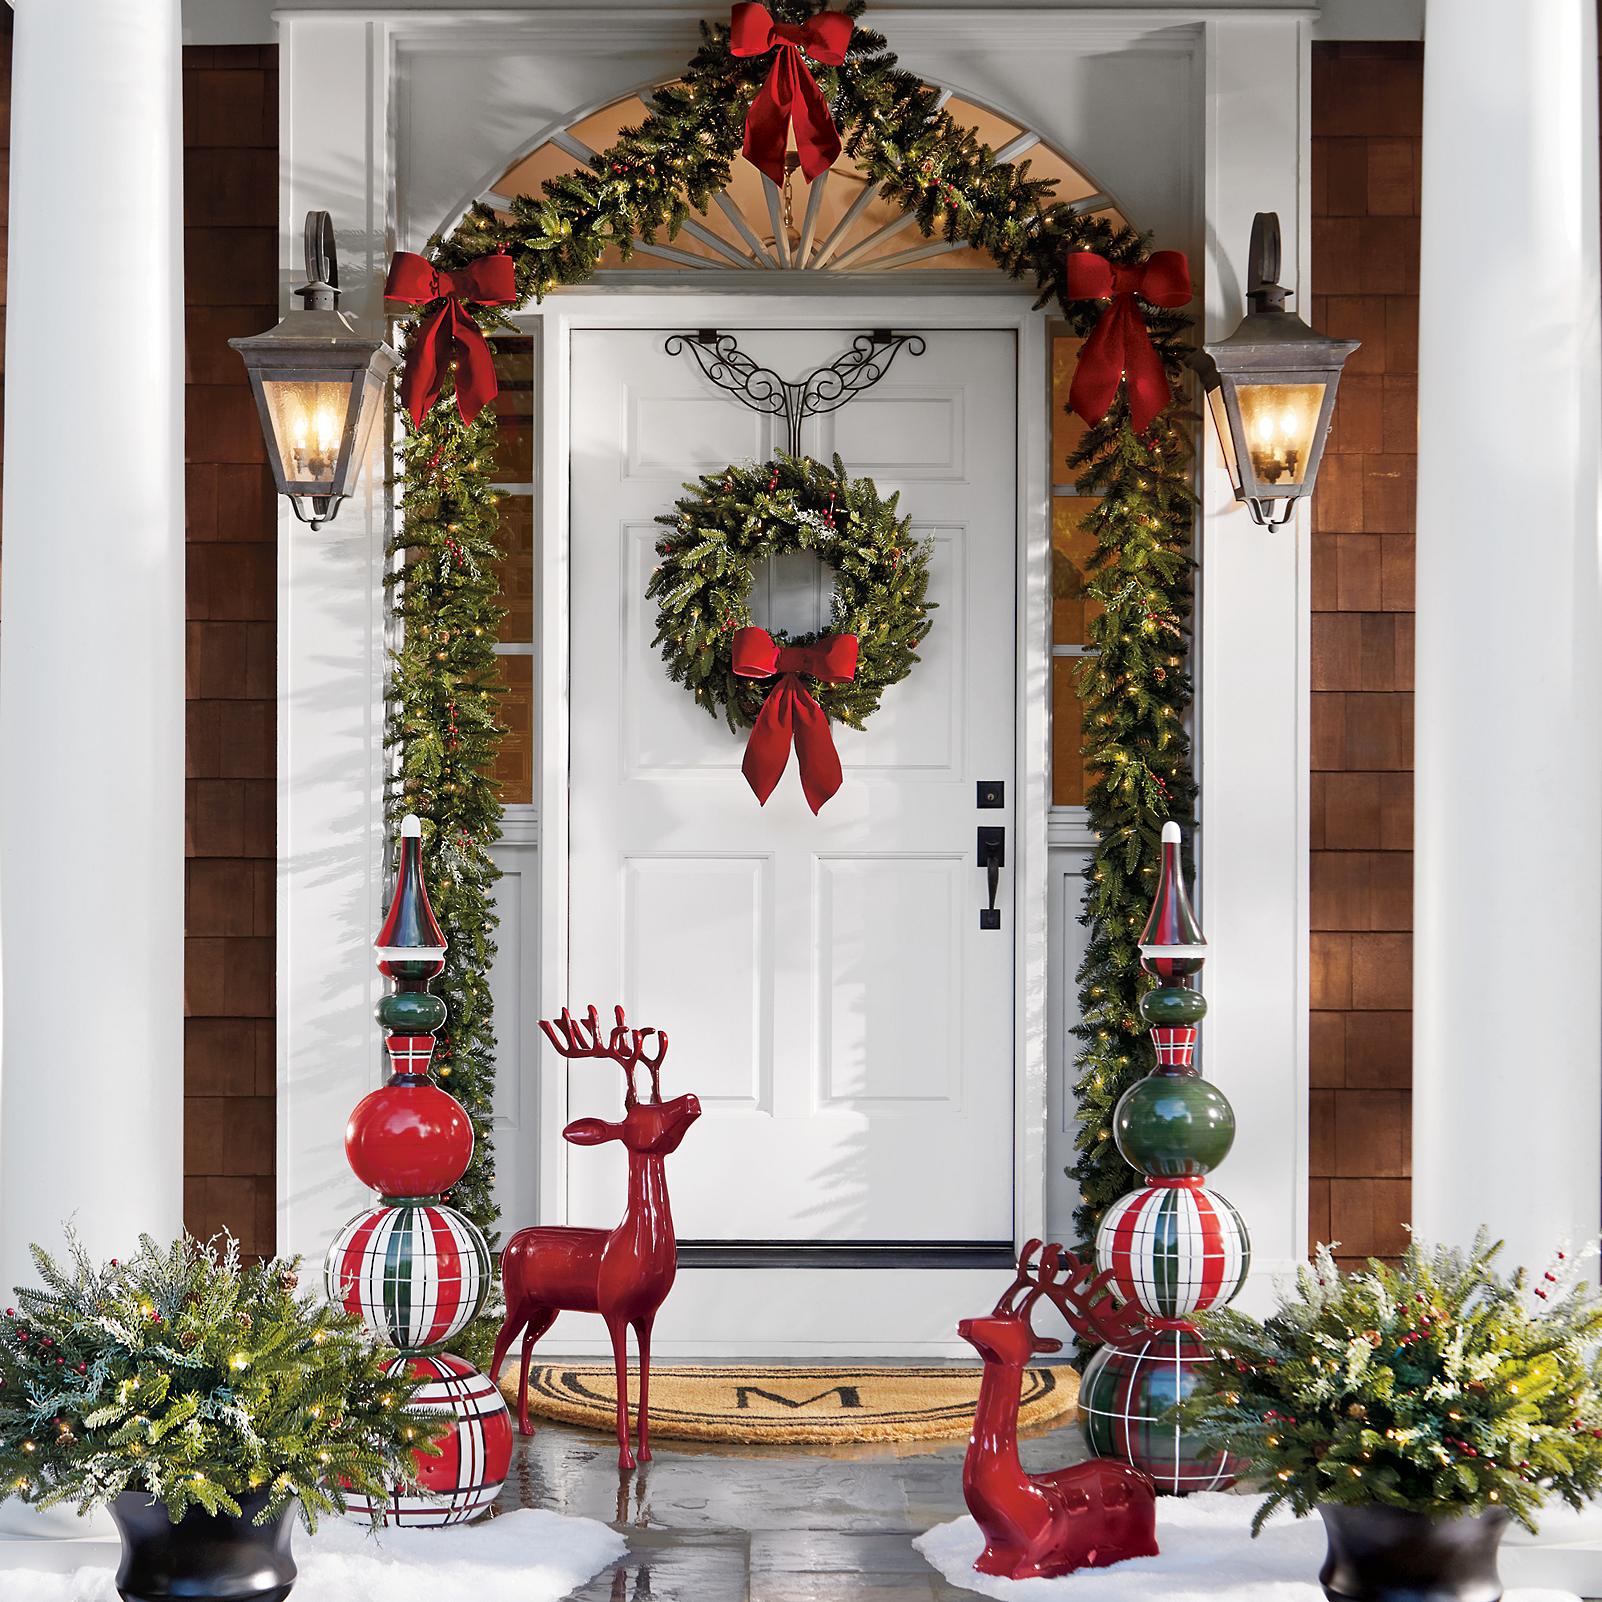 White Christmas Wreath Flower wreath winter wreath Door decoration snowflake Door Hanger Wreath for your front Door 18” Wreath